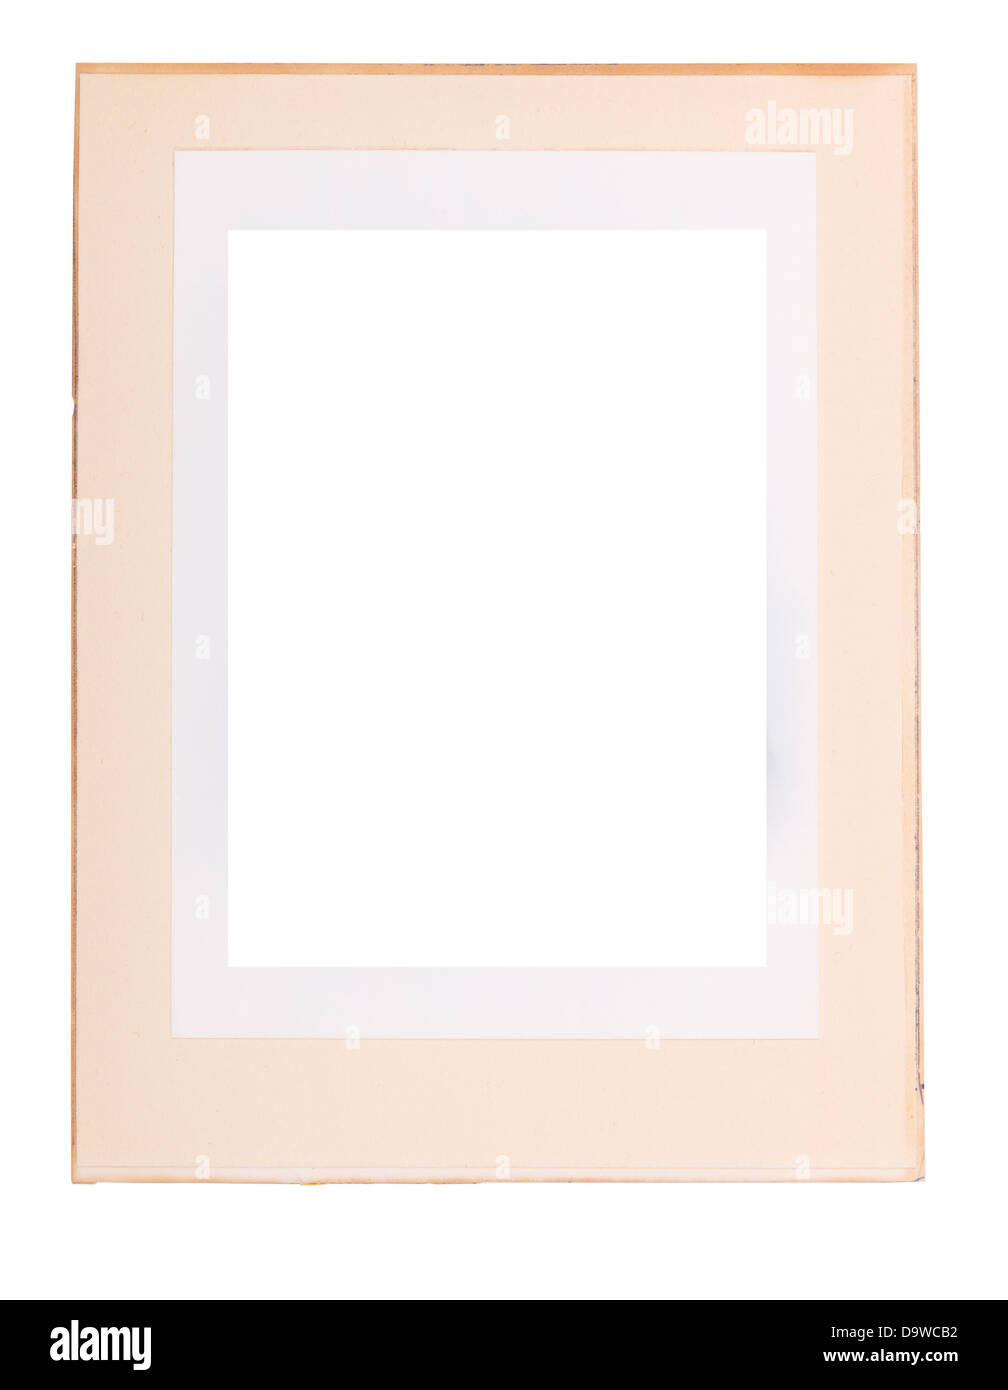 Foto antigua de borde de papel como un marco de fotos, aislado en blanco Foto de stock